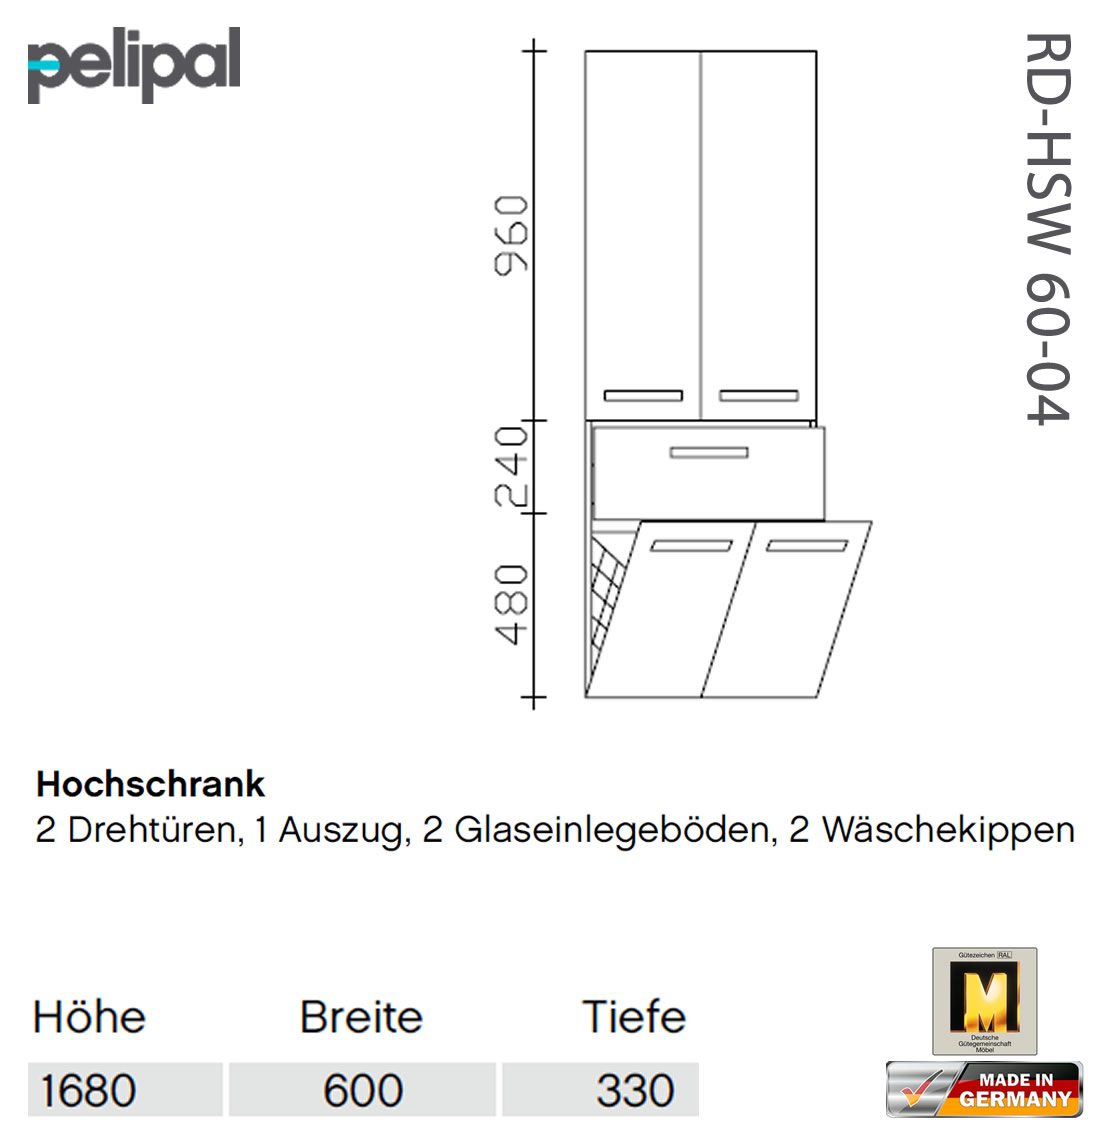 - 60-04 7005 Pelipal RD-HSW Hochschrank 168 cm